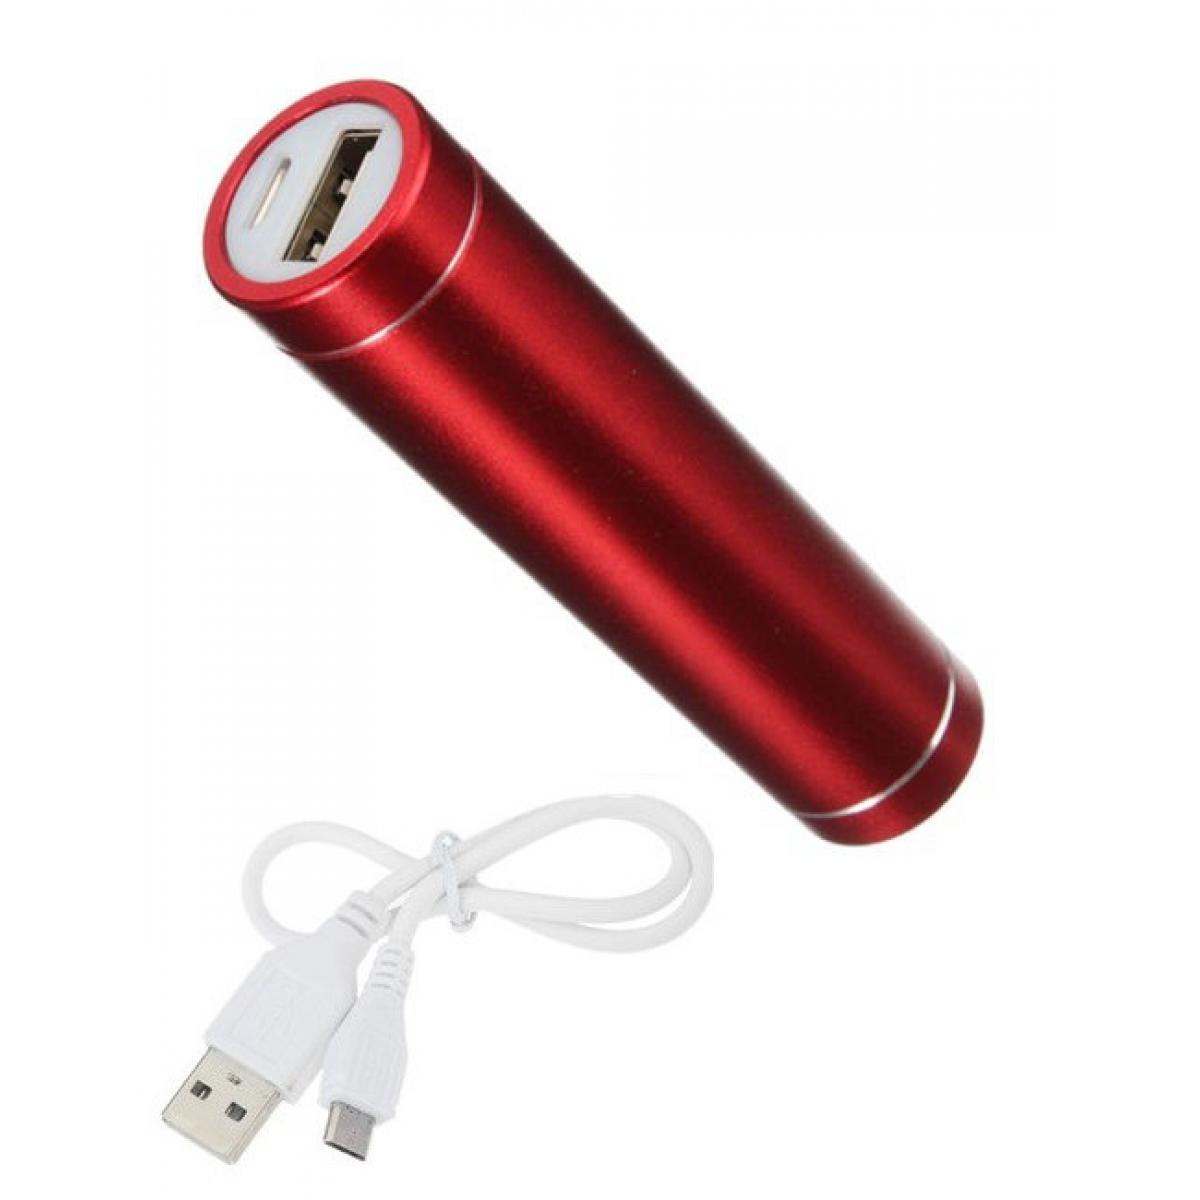 Shot - Batterie Chargeur Externe pour XIAOMI Redmi 7 Power Bank 2600mAh avec Cable USB/Mirco USB Secours Telephon (ROUGE) - Chargeur secteur téléphone